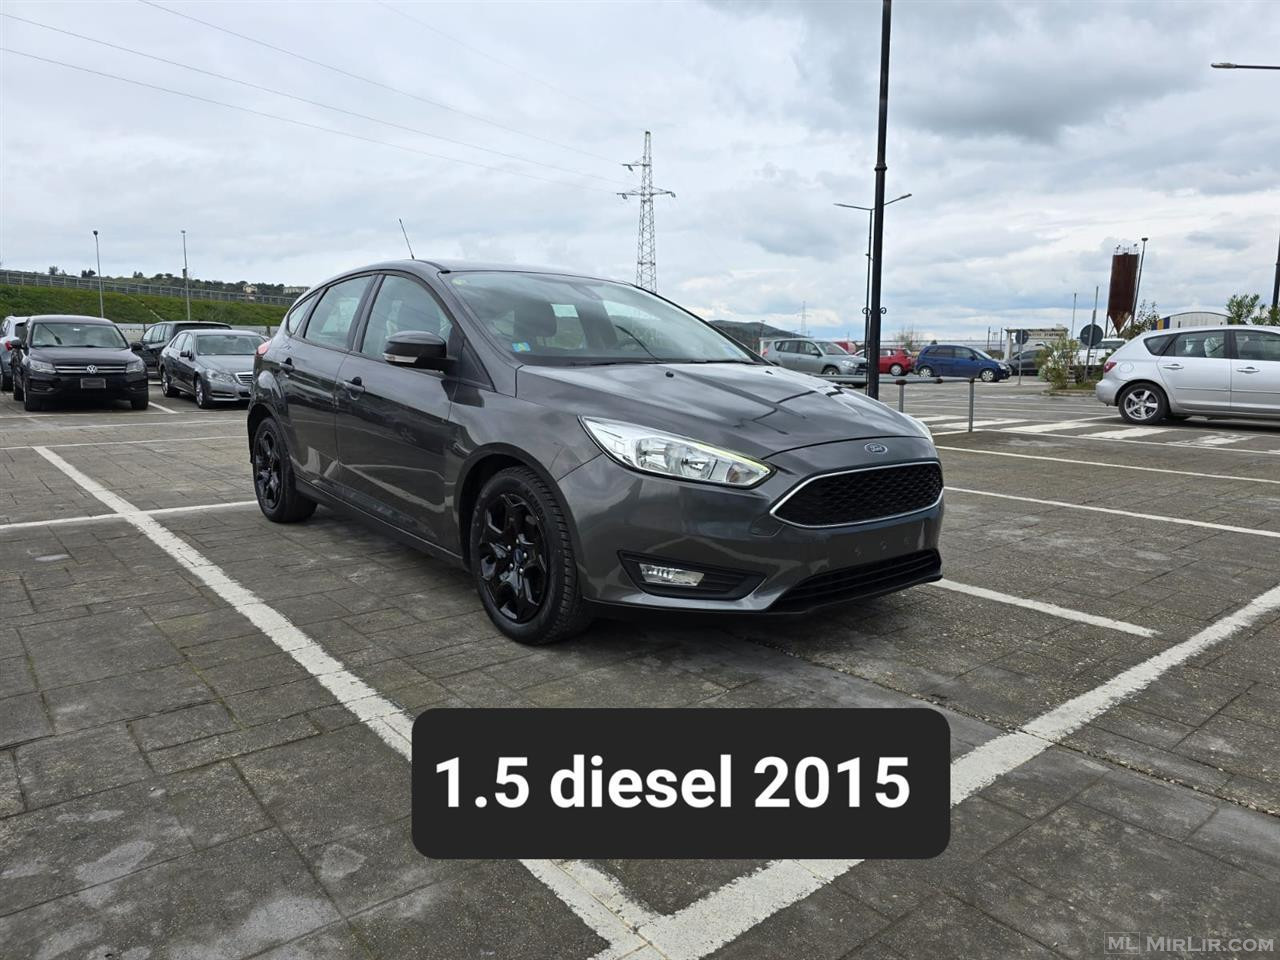 Ford Focus 1.5 diesel 2015